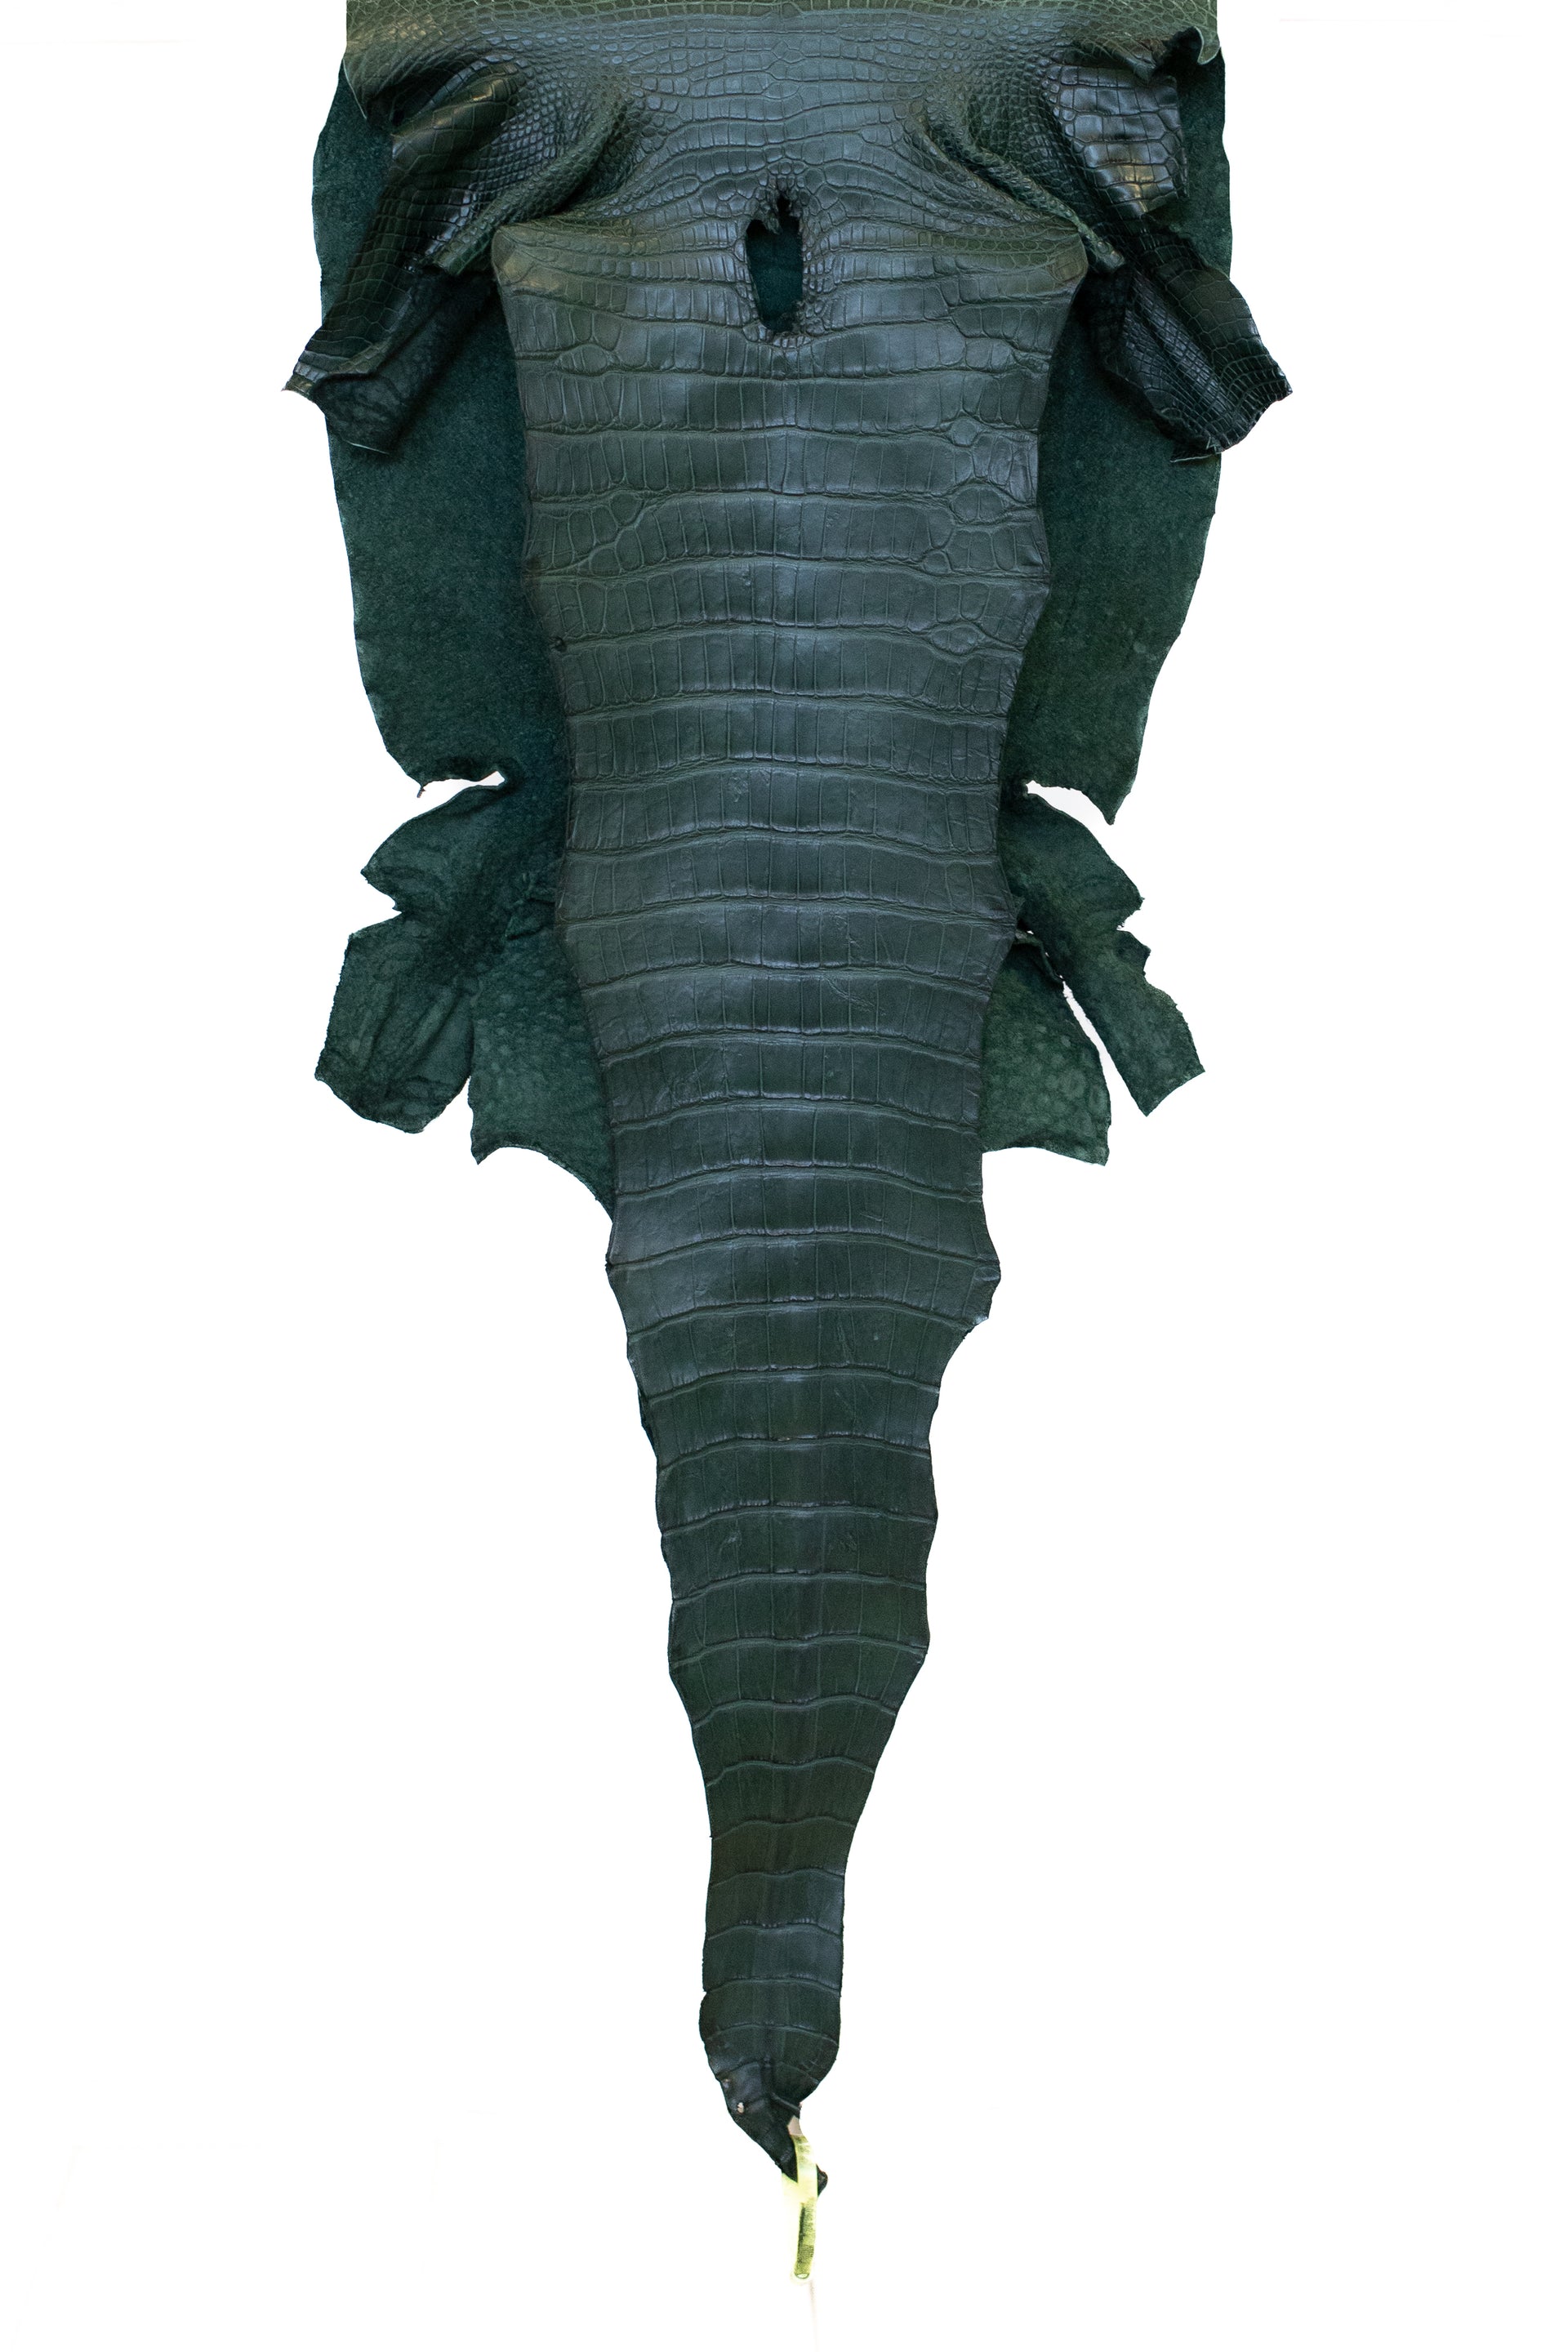 47 cm Grade 3/4 Forest Green Matte Wild American Alligator Leather - Tag: LA22-0004157